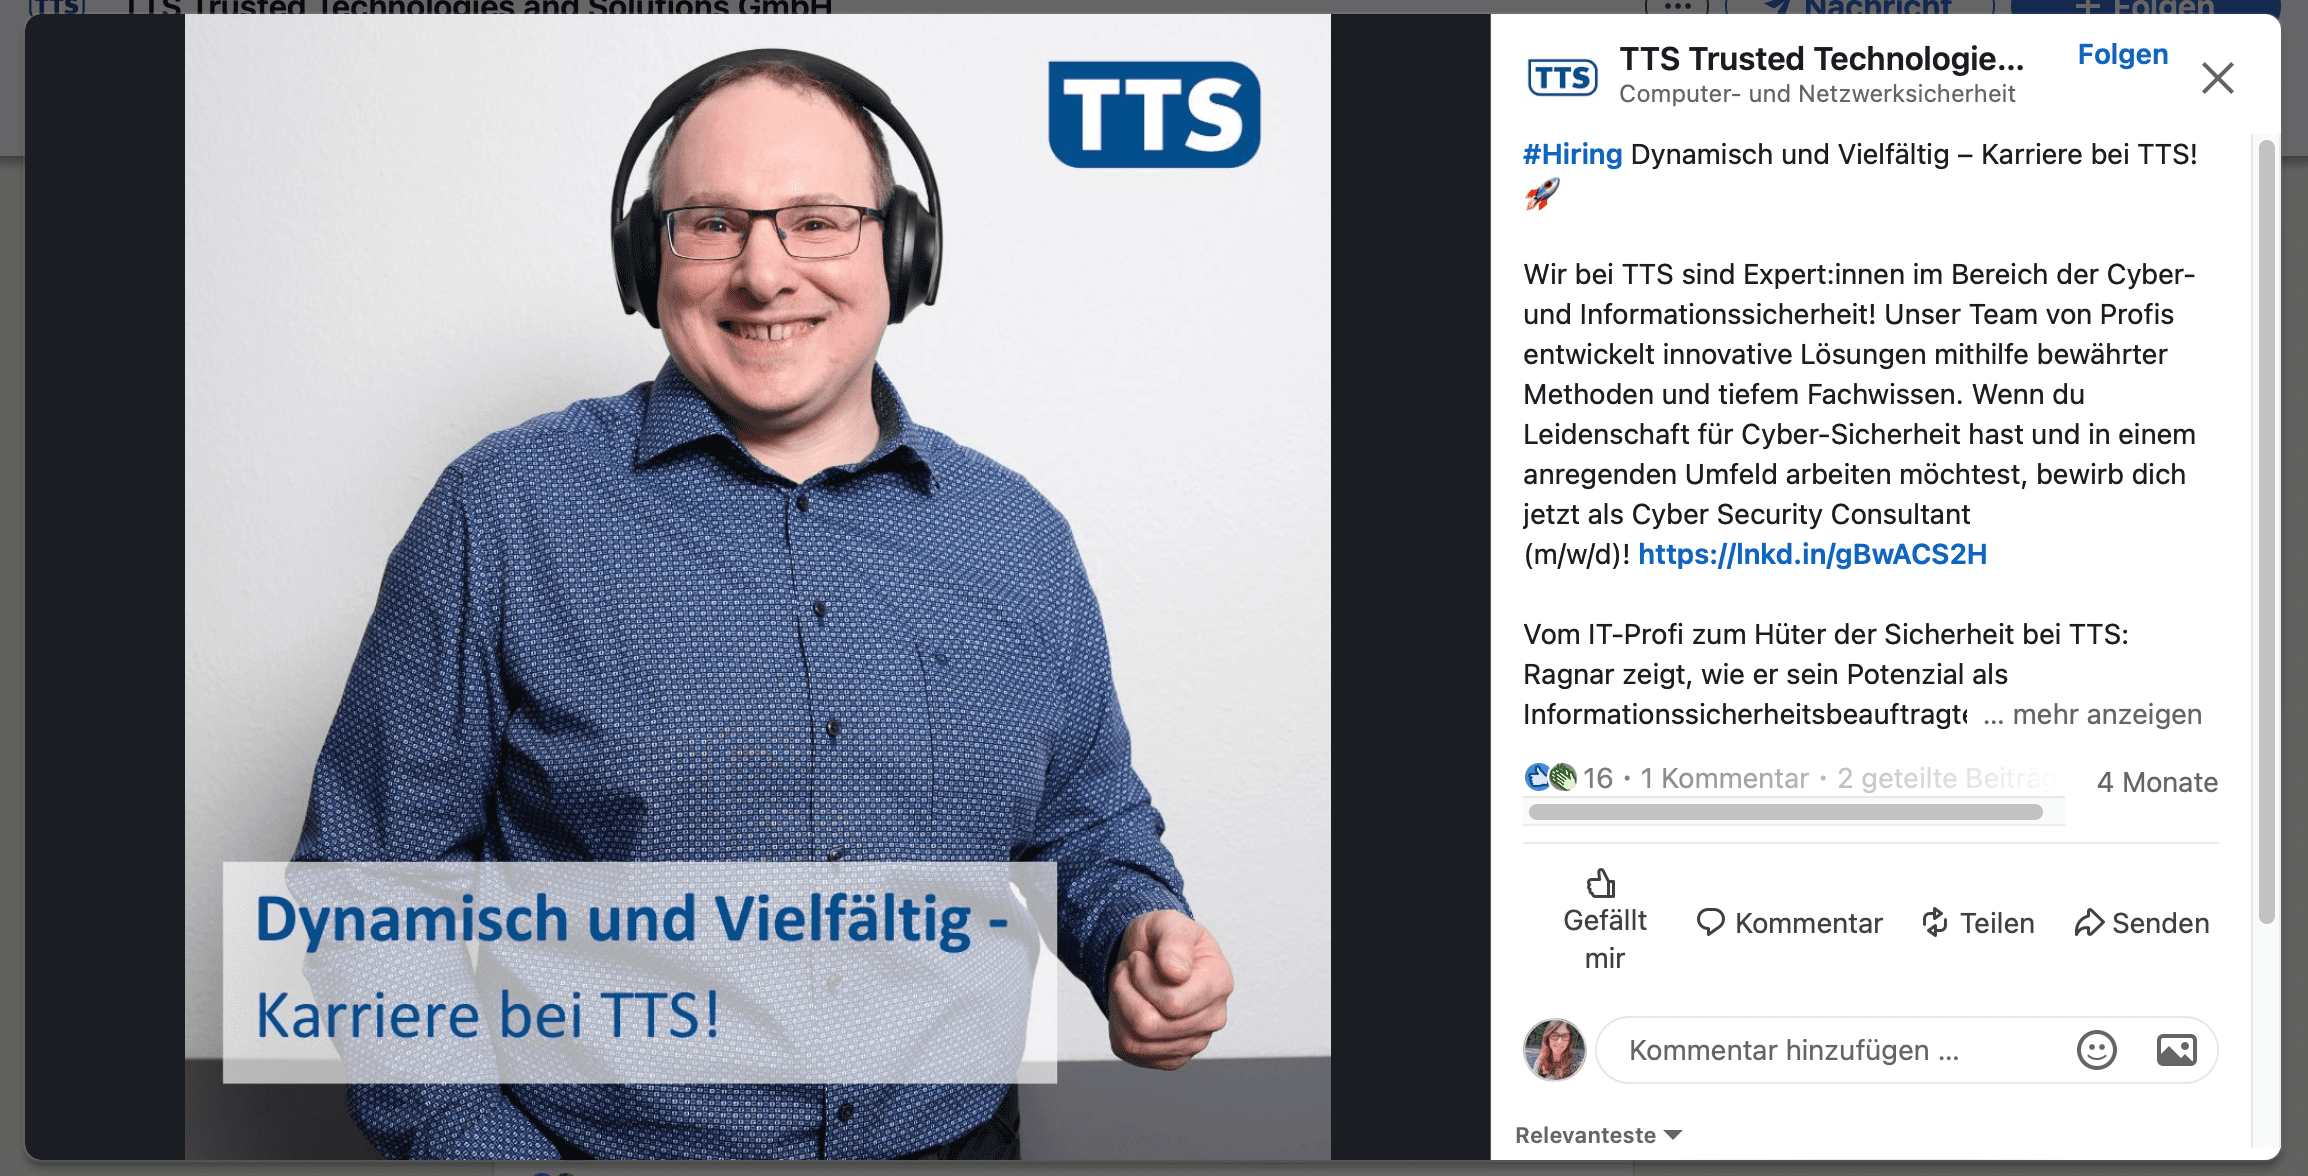 TTS LinkedIn-Beitrag, Beschriftung: "Dynamisch und vielfältig - Karriere bei TTS"